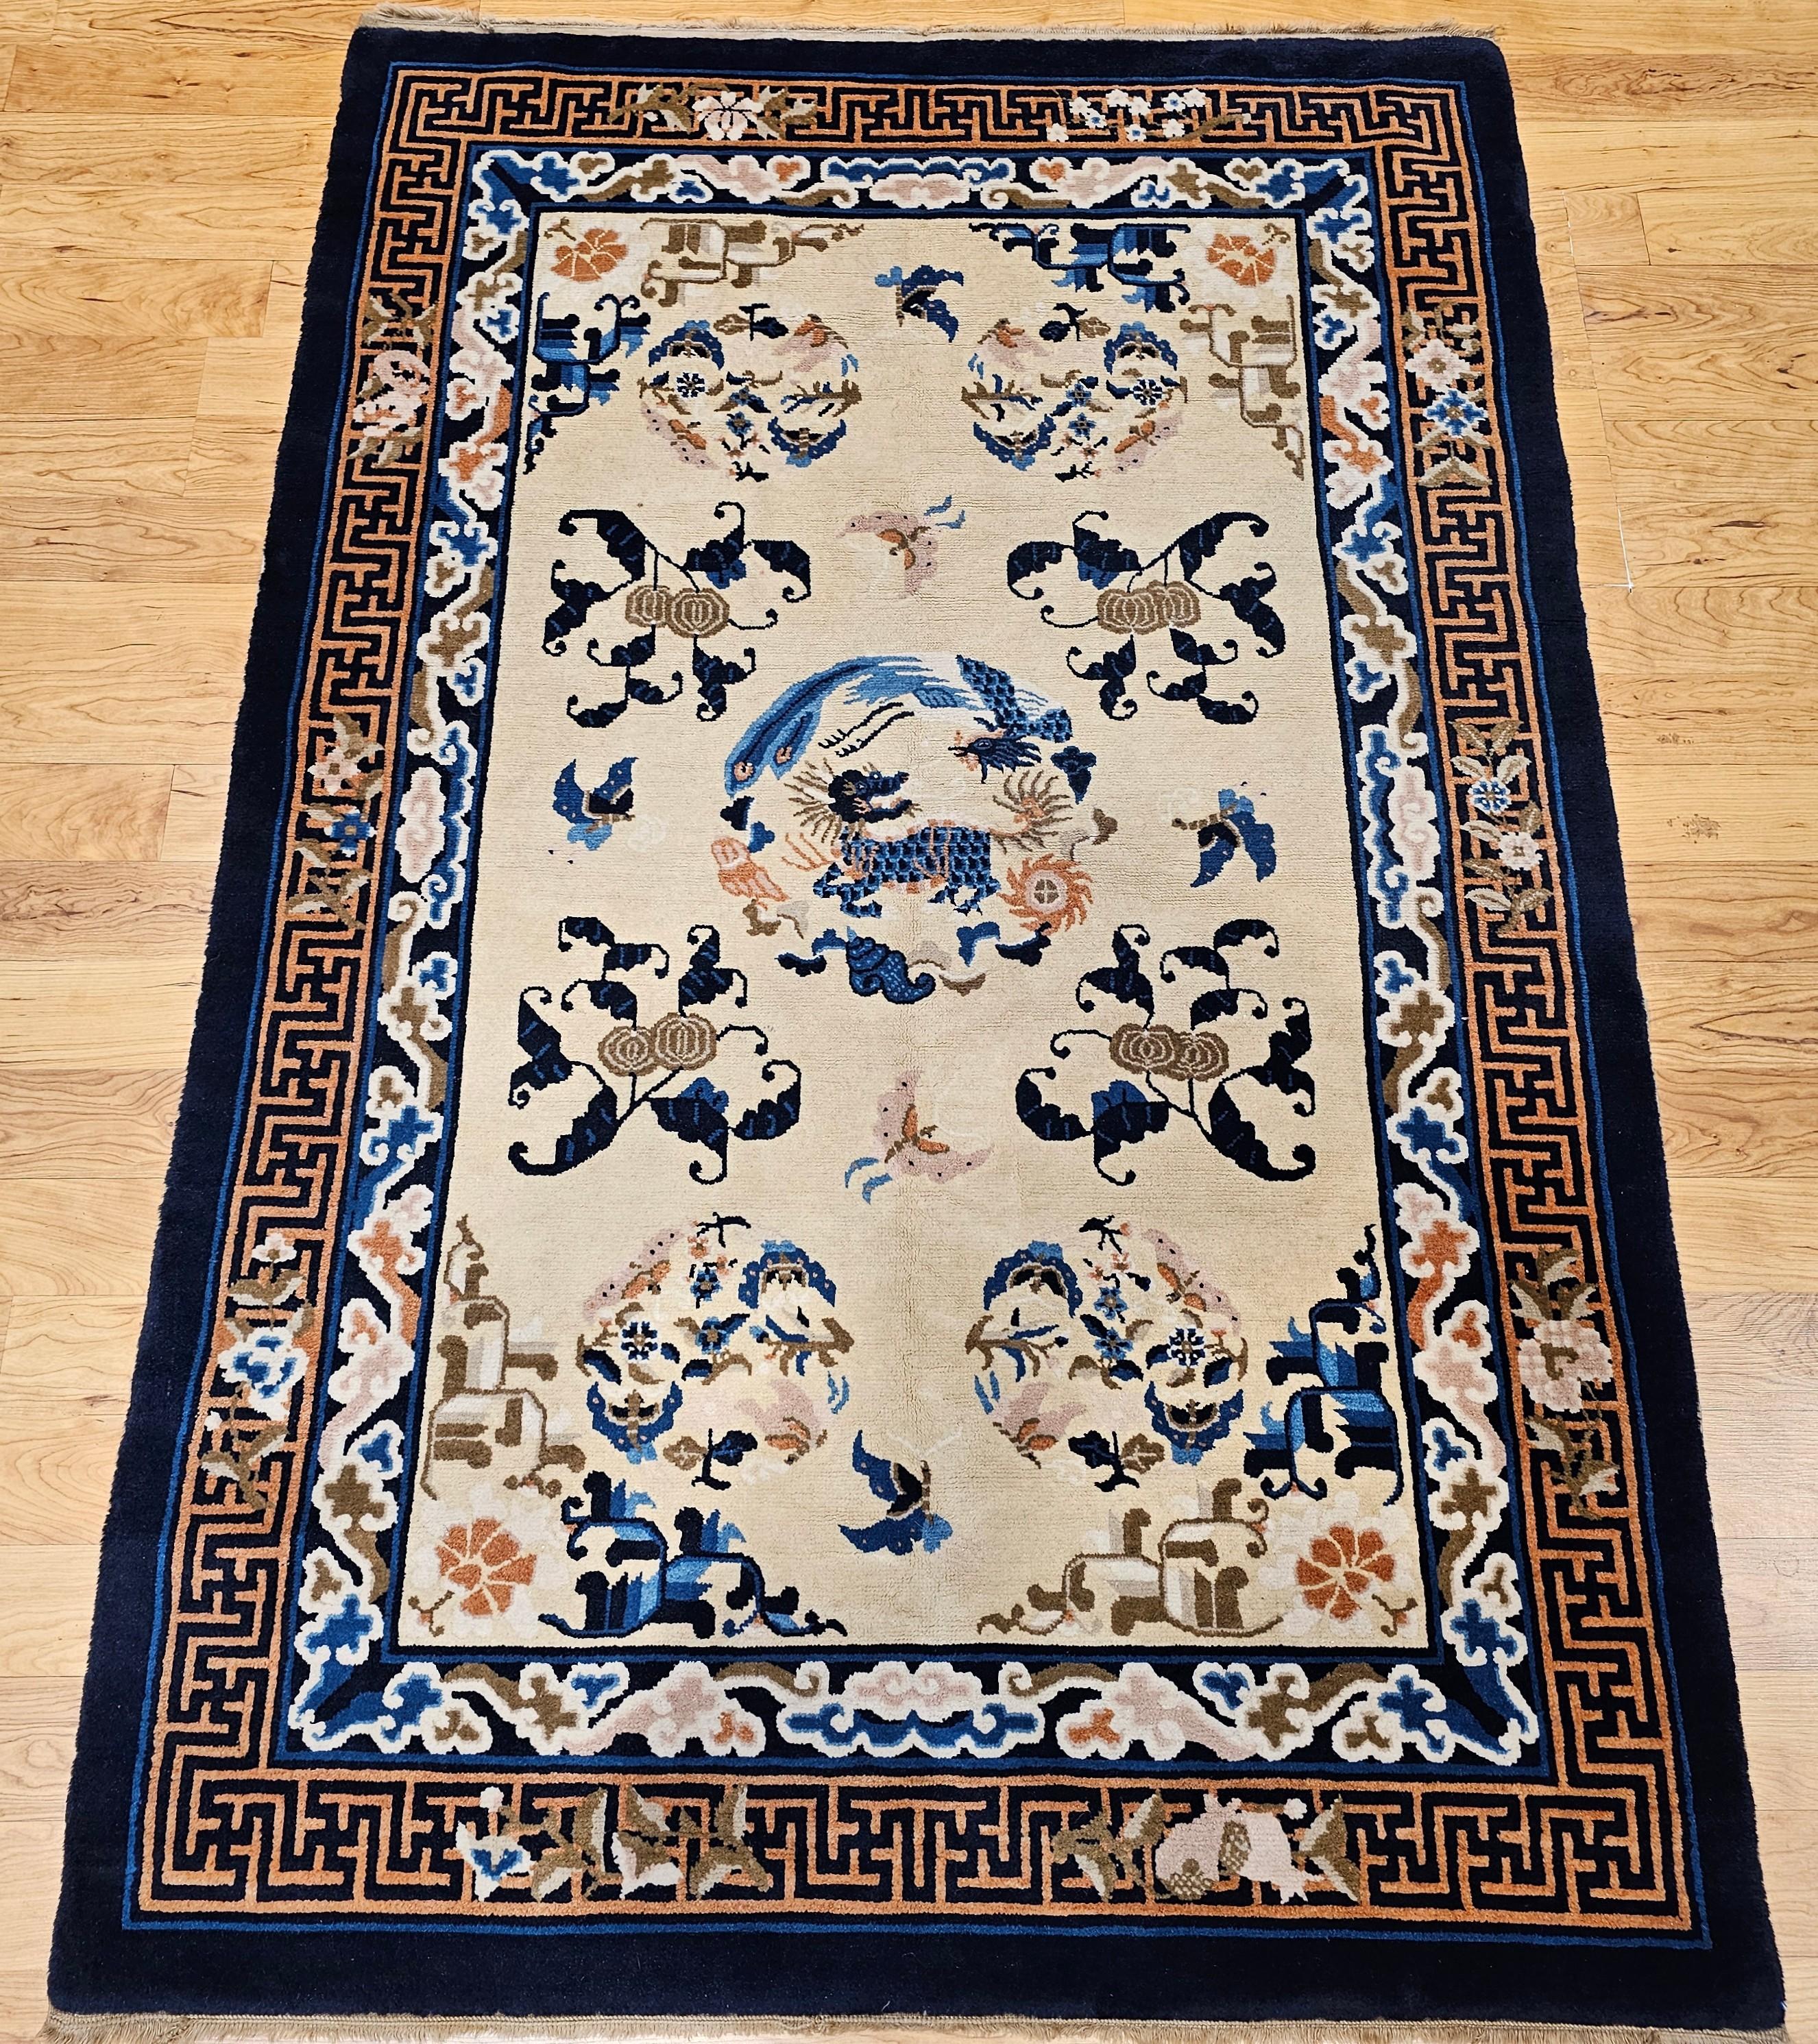 Chinesischer Art-Déco-Teppich im Vintage-Stil mit Glückssymbolen wie Qilin, Phönix, Schmetterlingen, Motten und Wolken.  Der Teppich hat ein elfenbeinfarbenes Feld und eine marineblaue Bordüre.  Das Design des Teppichs zeigt chinesische Symbole für